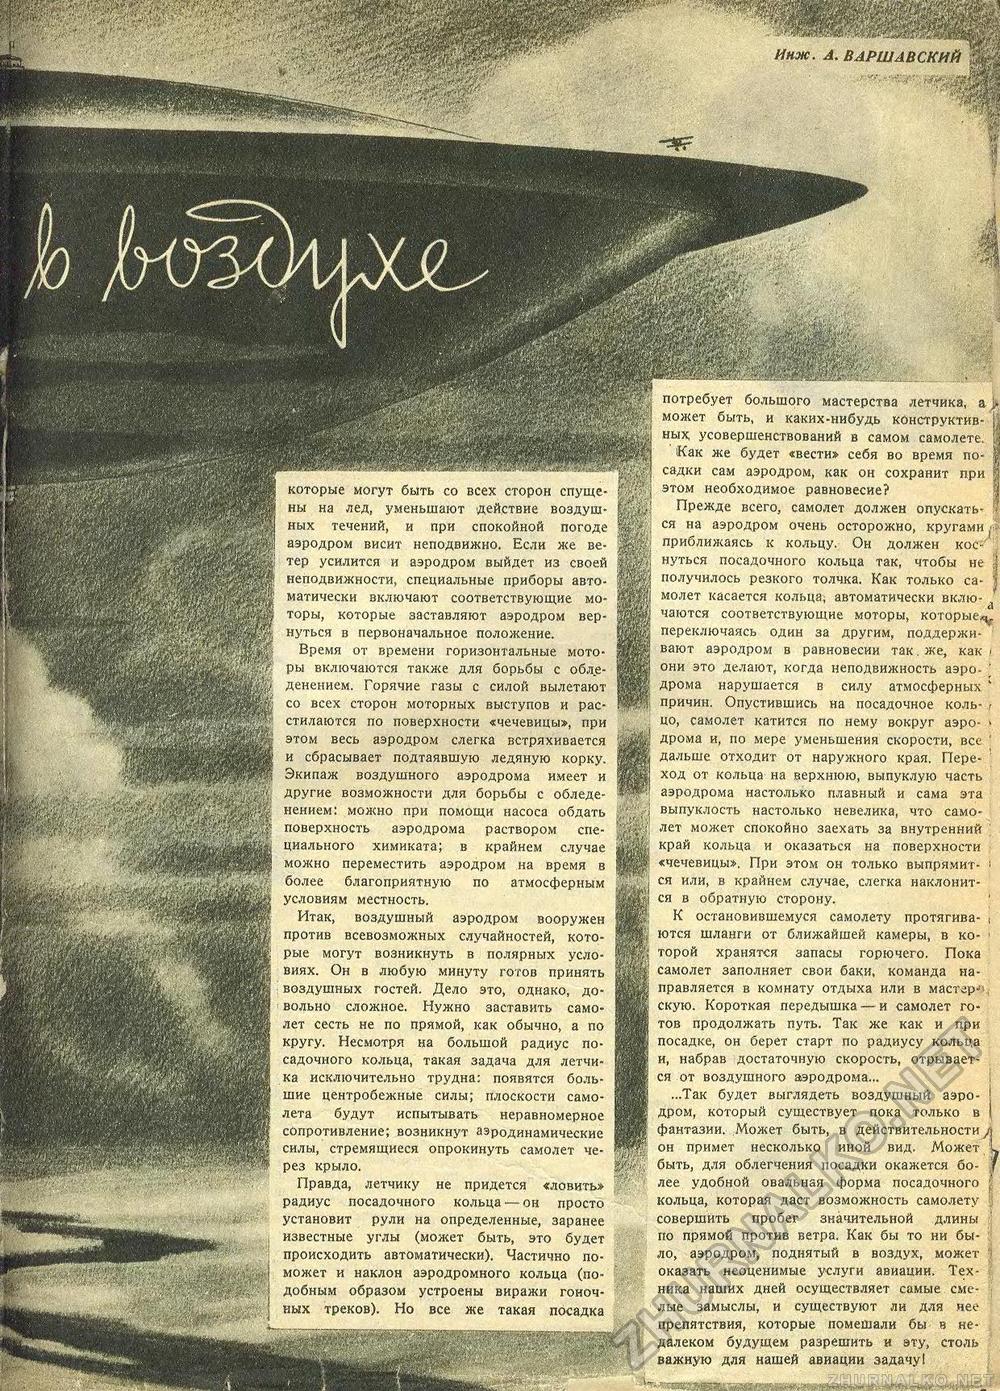  -  1938-04,  35